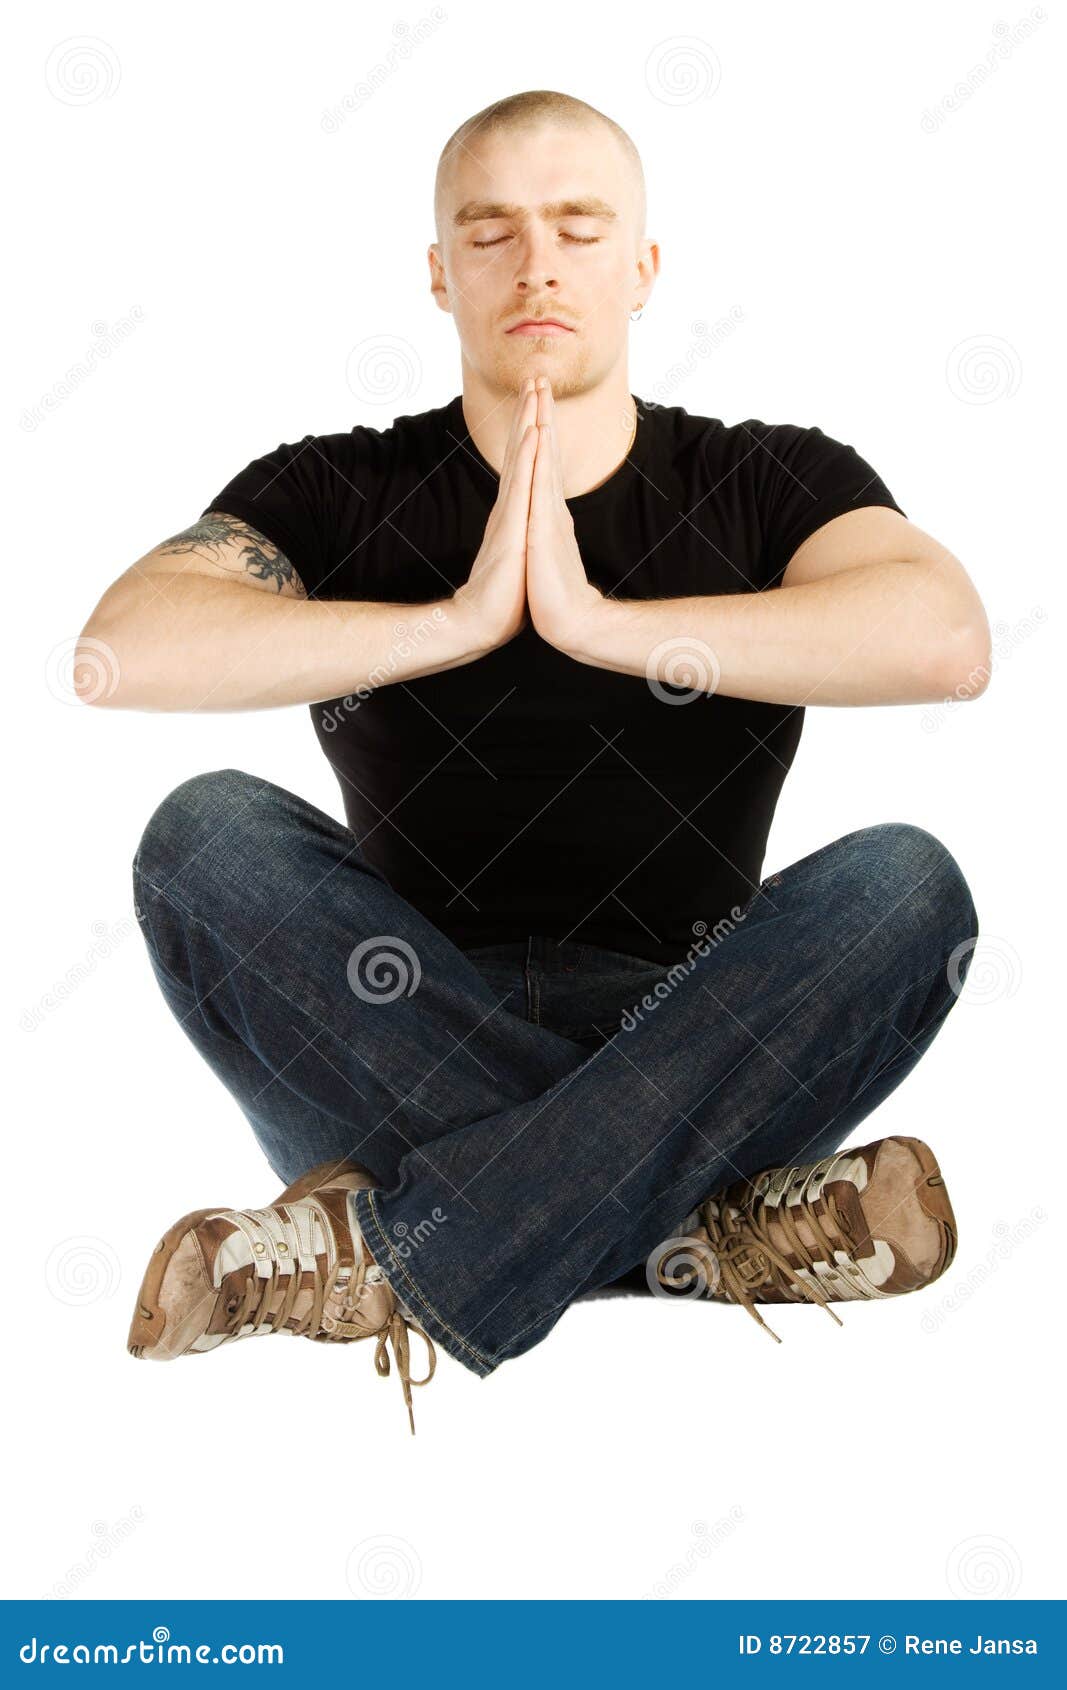 Meditatie. De geïsoleerdeu mens mediteerde in zwart overhemd en blauwe jenas zittend op de grond met gekruiste benen op witte achtergrond